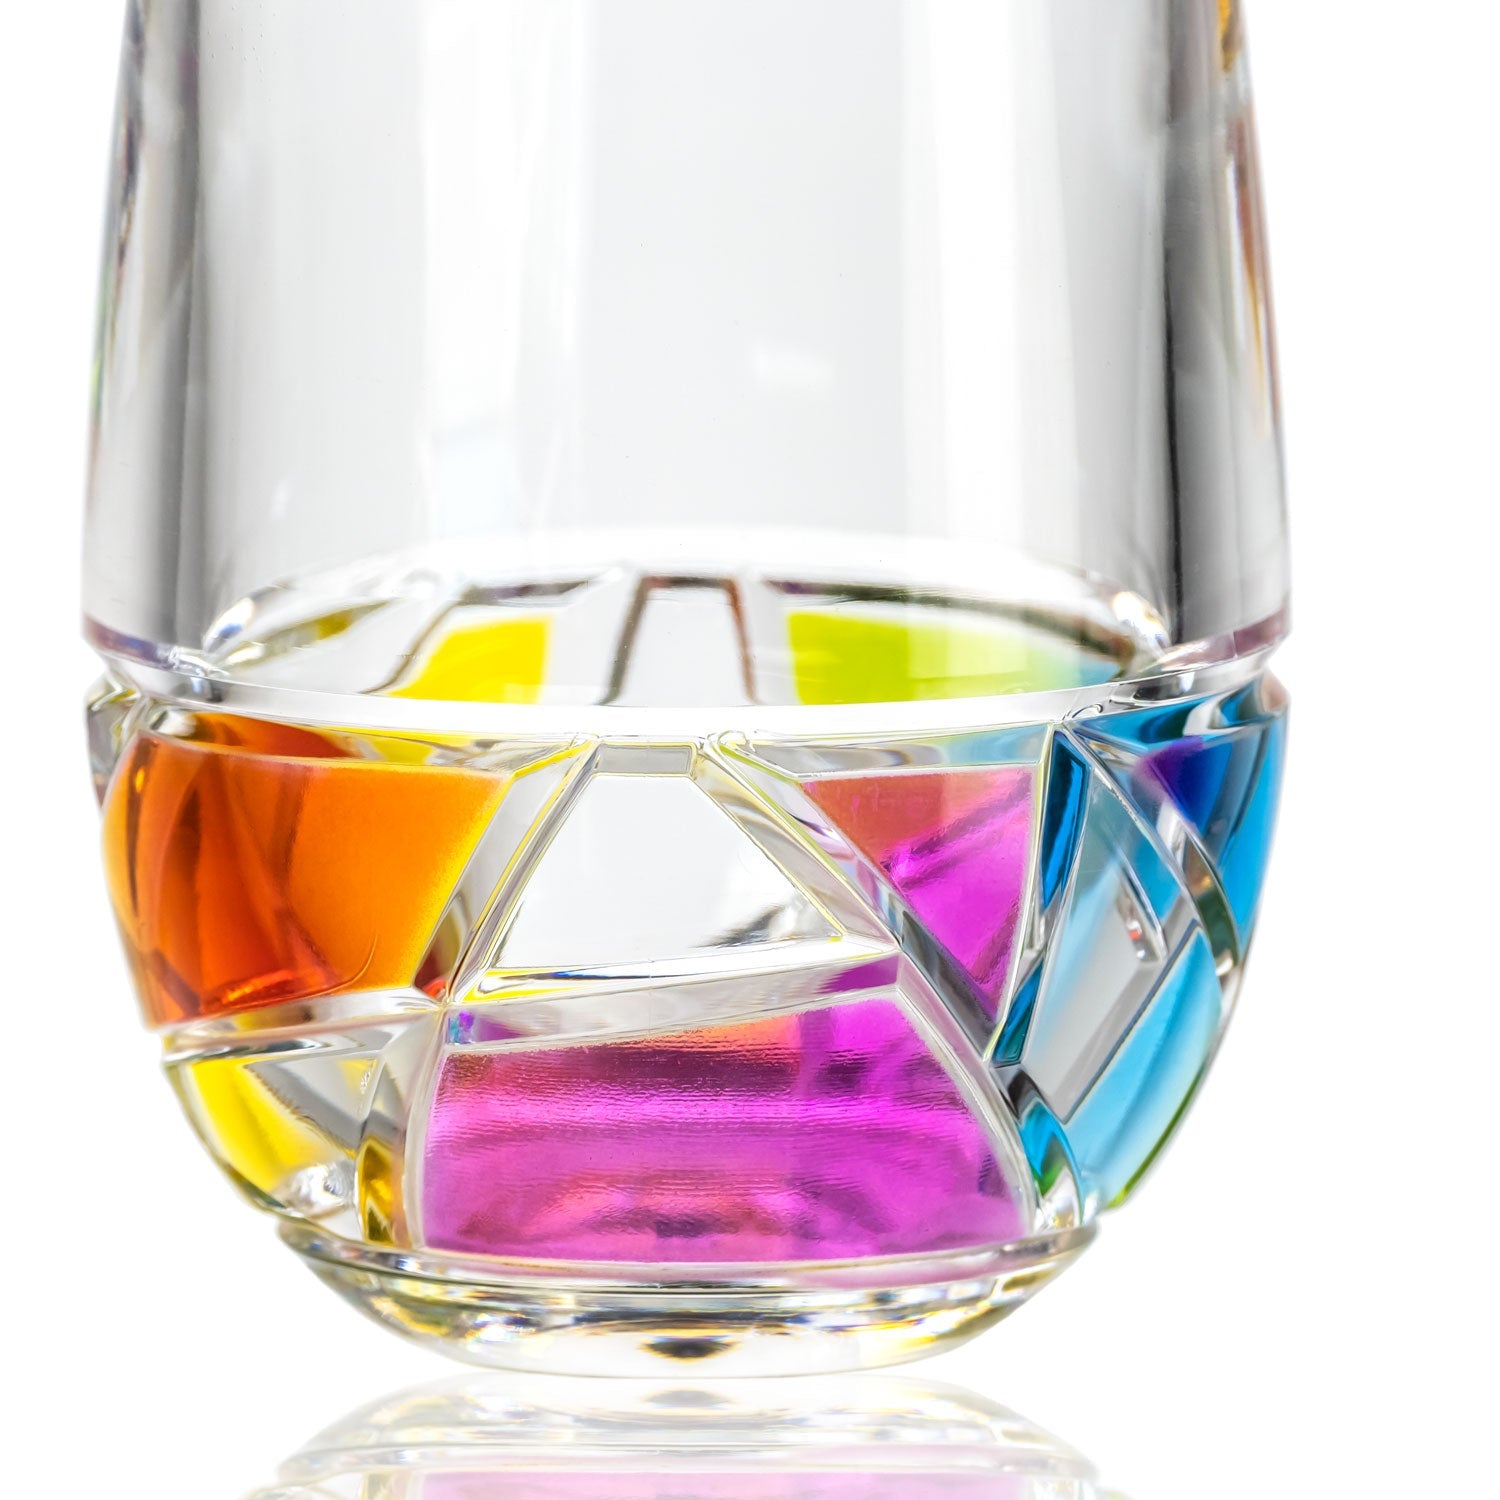 Mosaic 10oz Rainbow Acrylic Tumbler Drinking Glasses I Set of 6